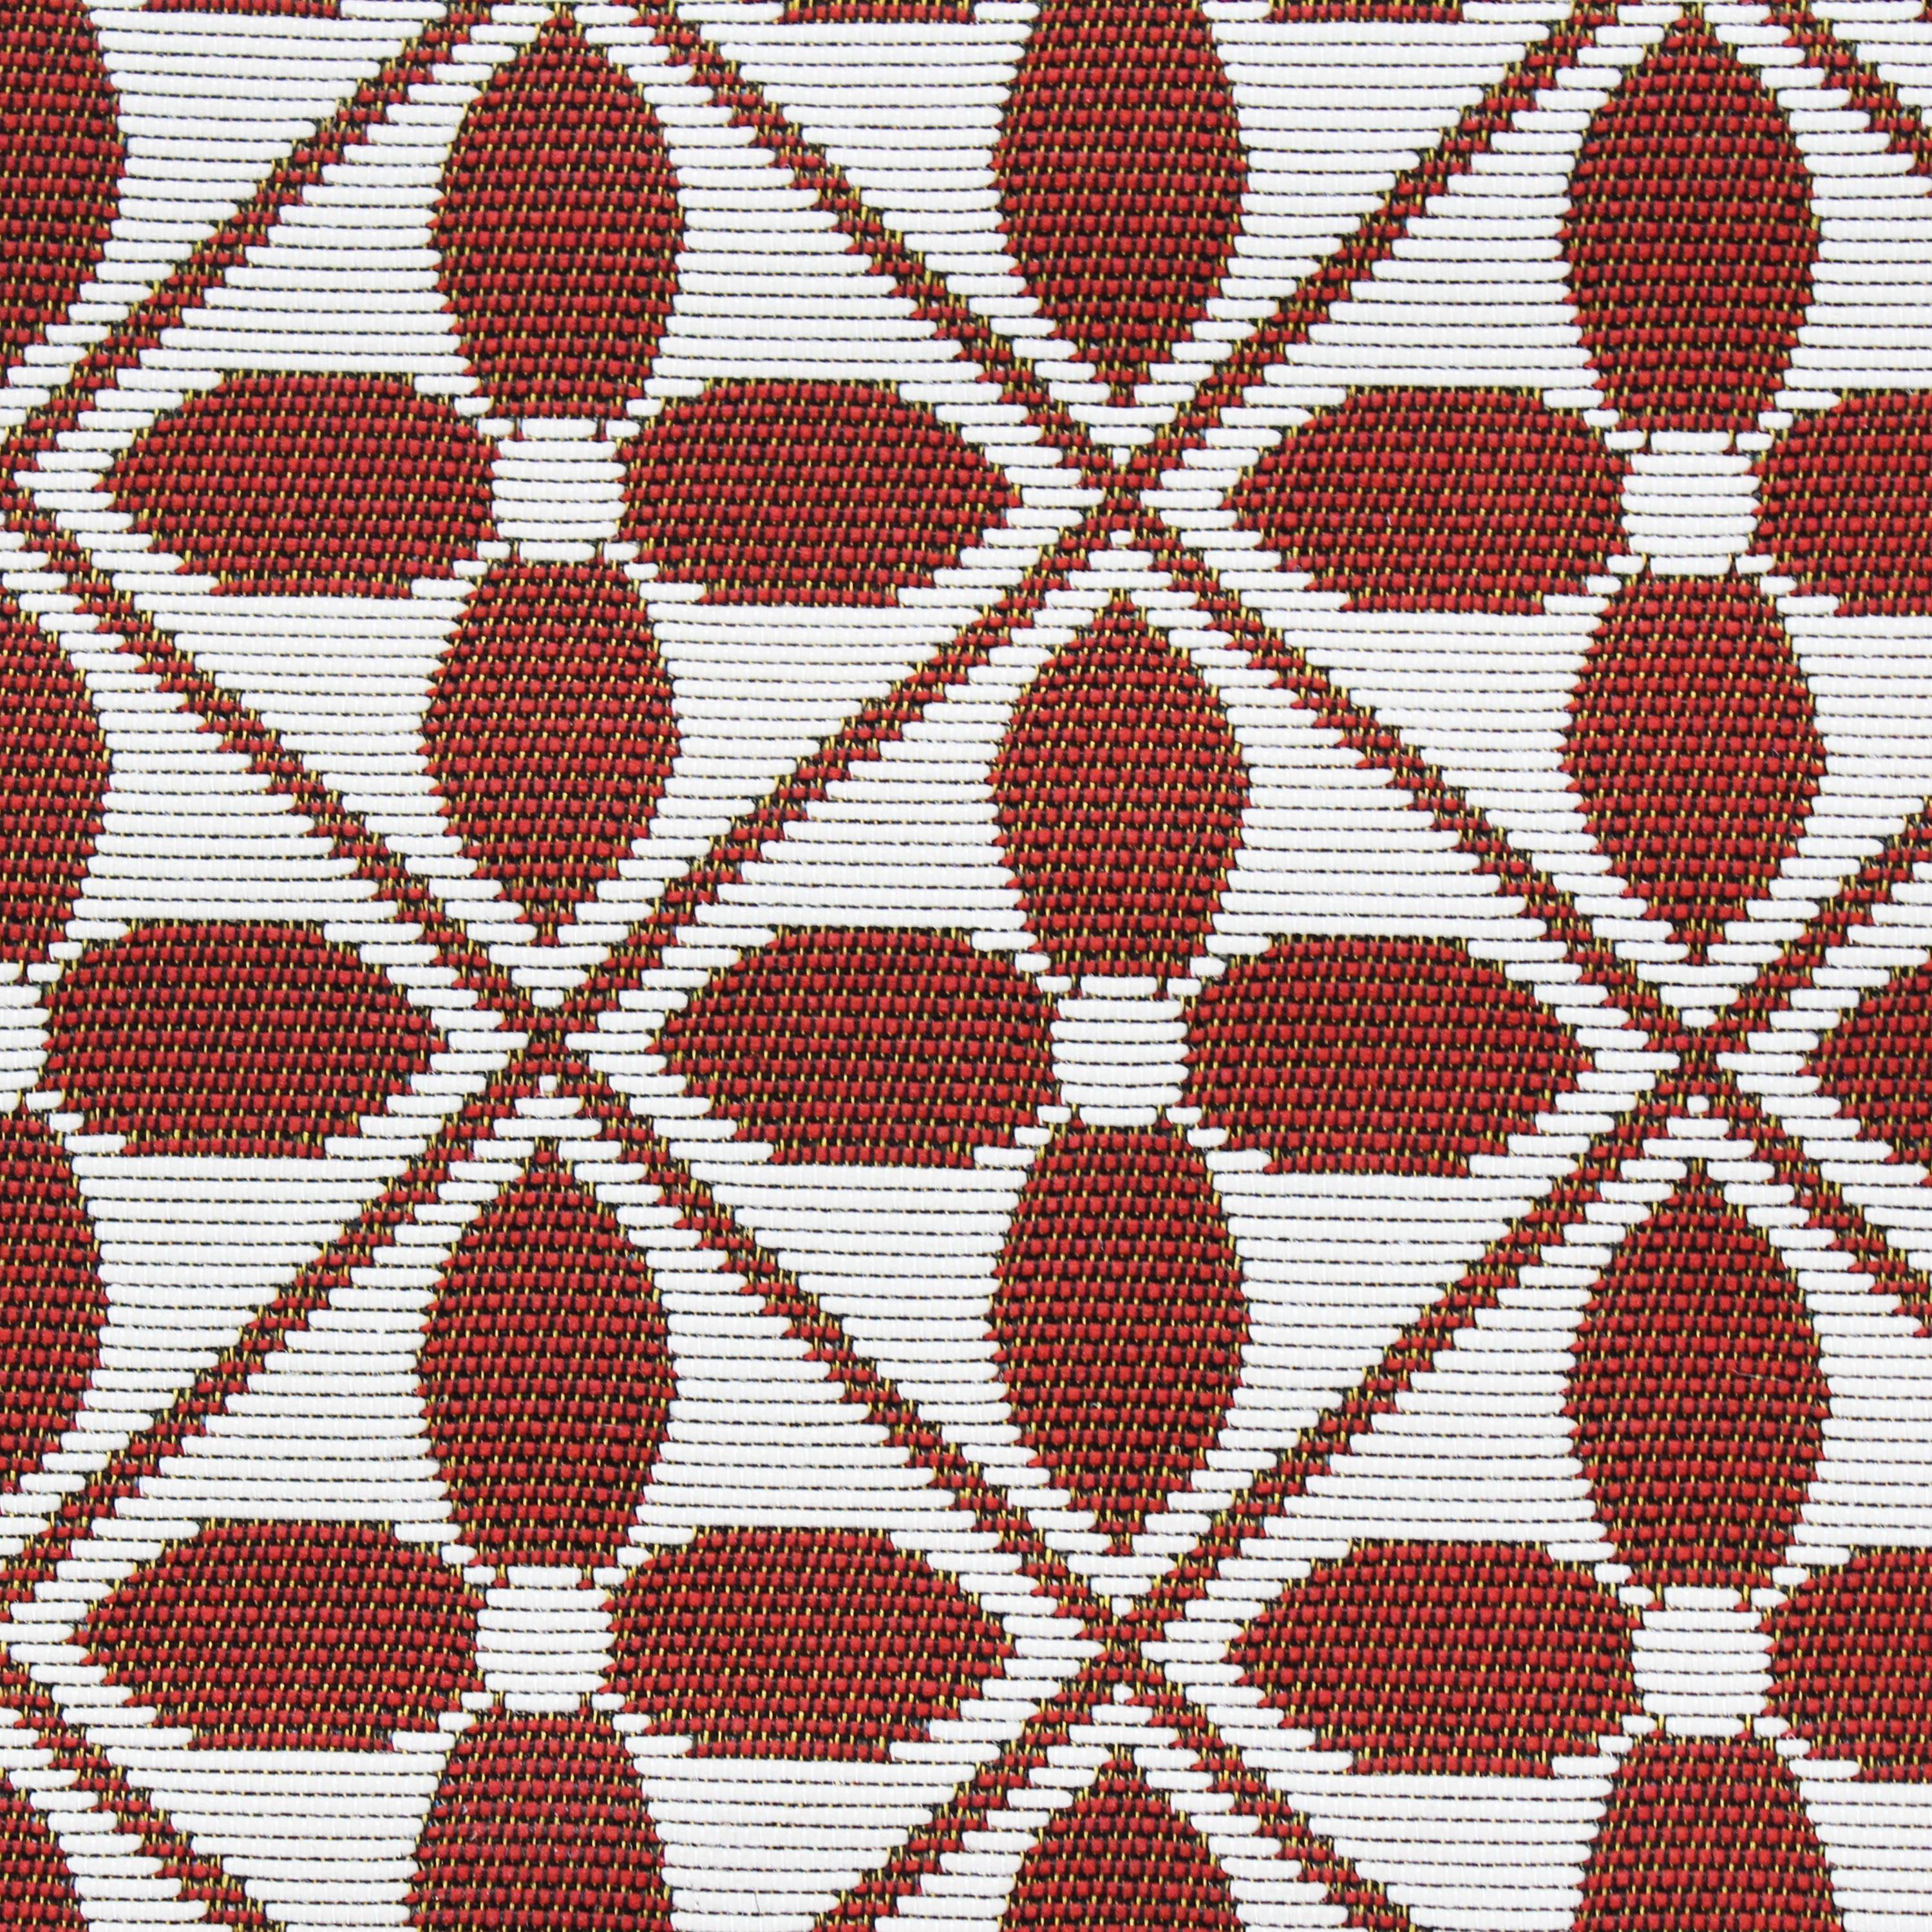 Outdoor rug - 160x230cm - tile print, rectangular, indoor/outdoor use - Terracotta,sweeek,Photo4